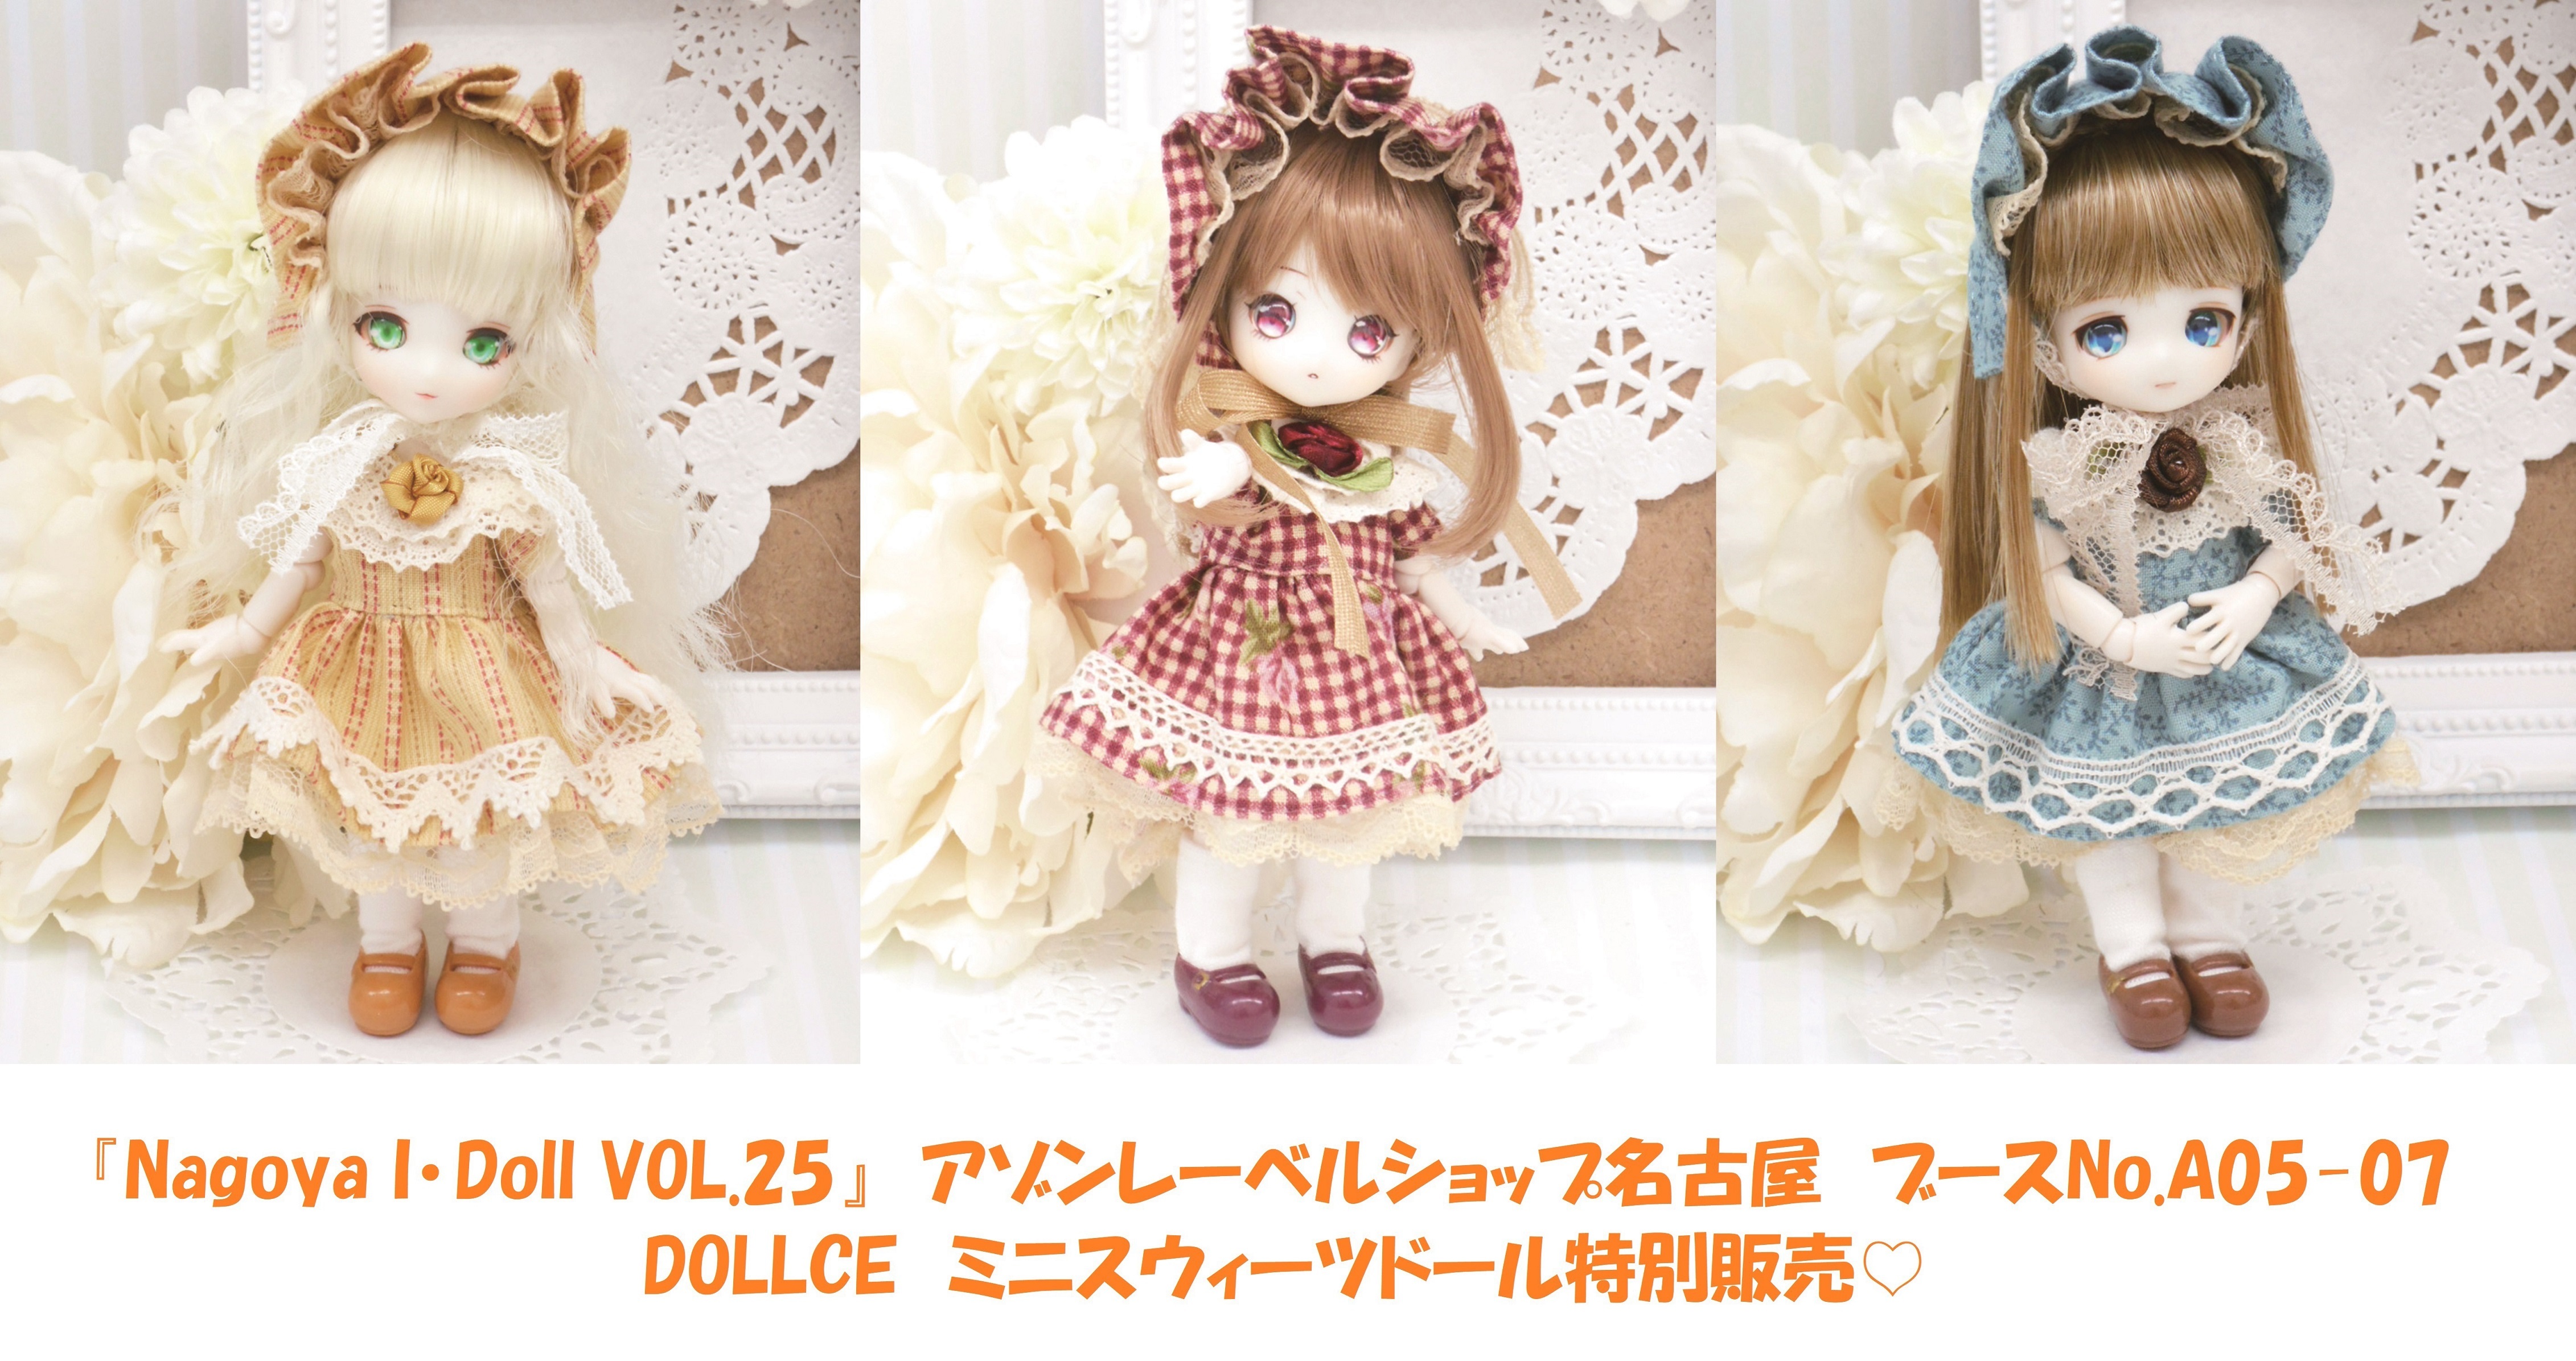 お知らせ】Nagoya I・Doll VOL.25会場販売 『DOLLCEミニスウィーツ 